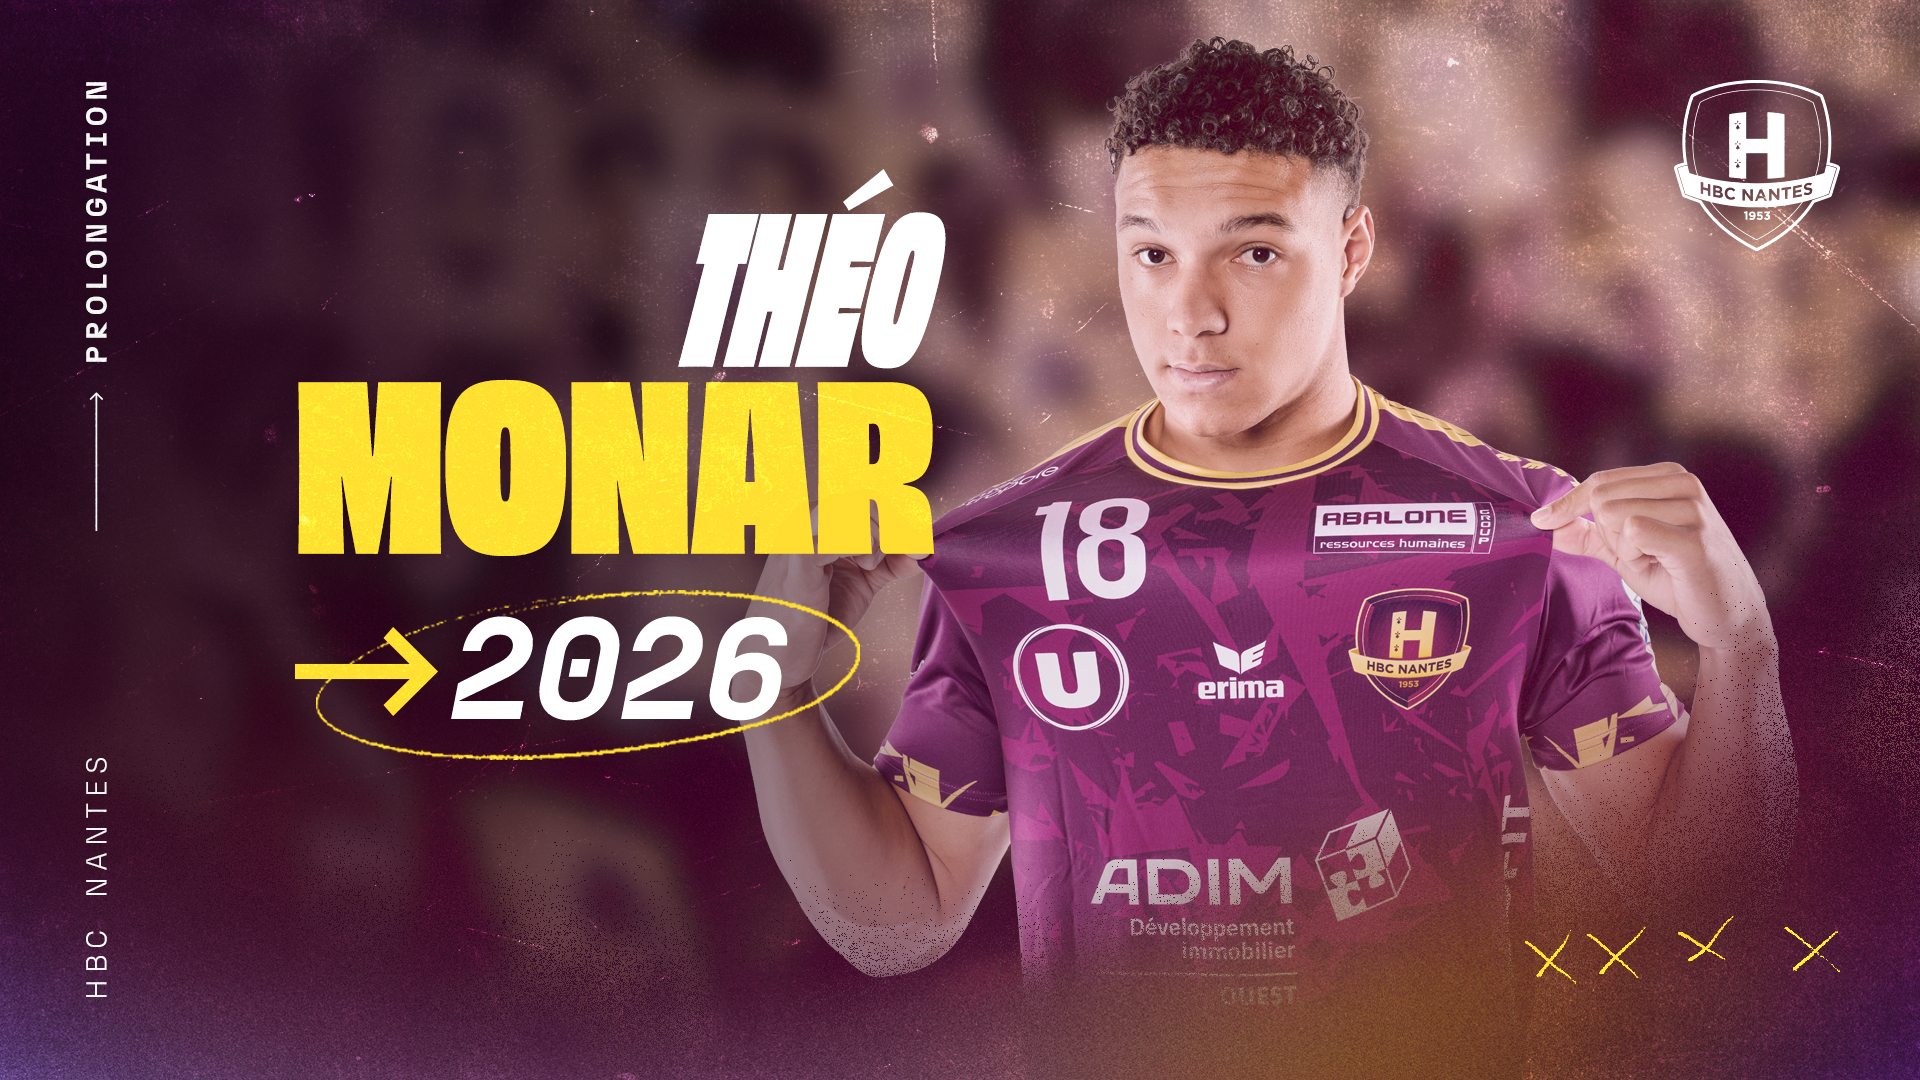 Théo Monar prolonge au HBC Nantes jusqu'en 2026